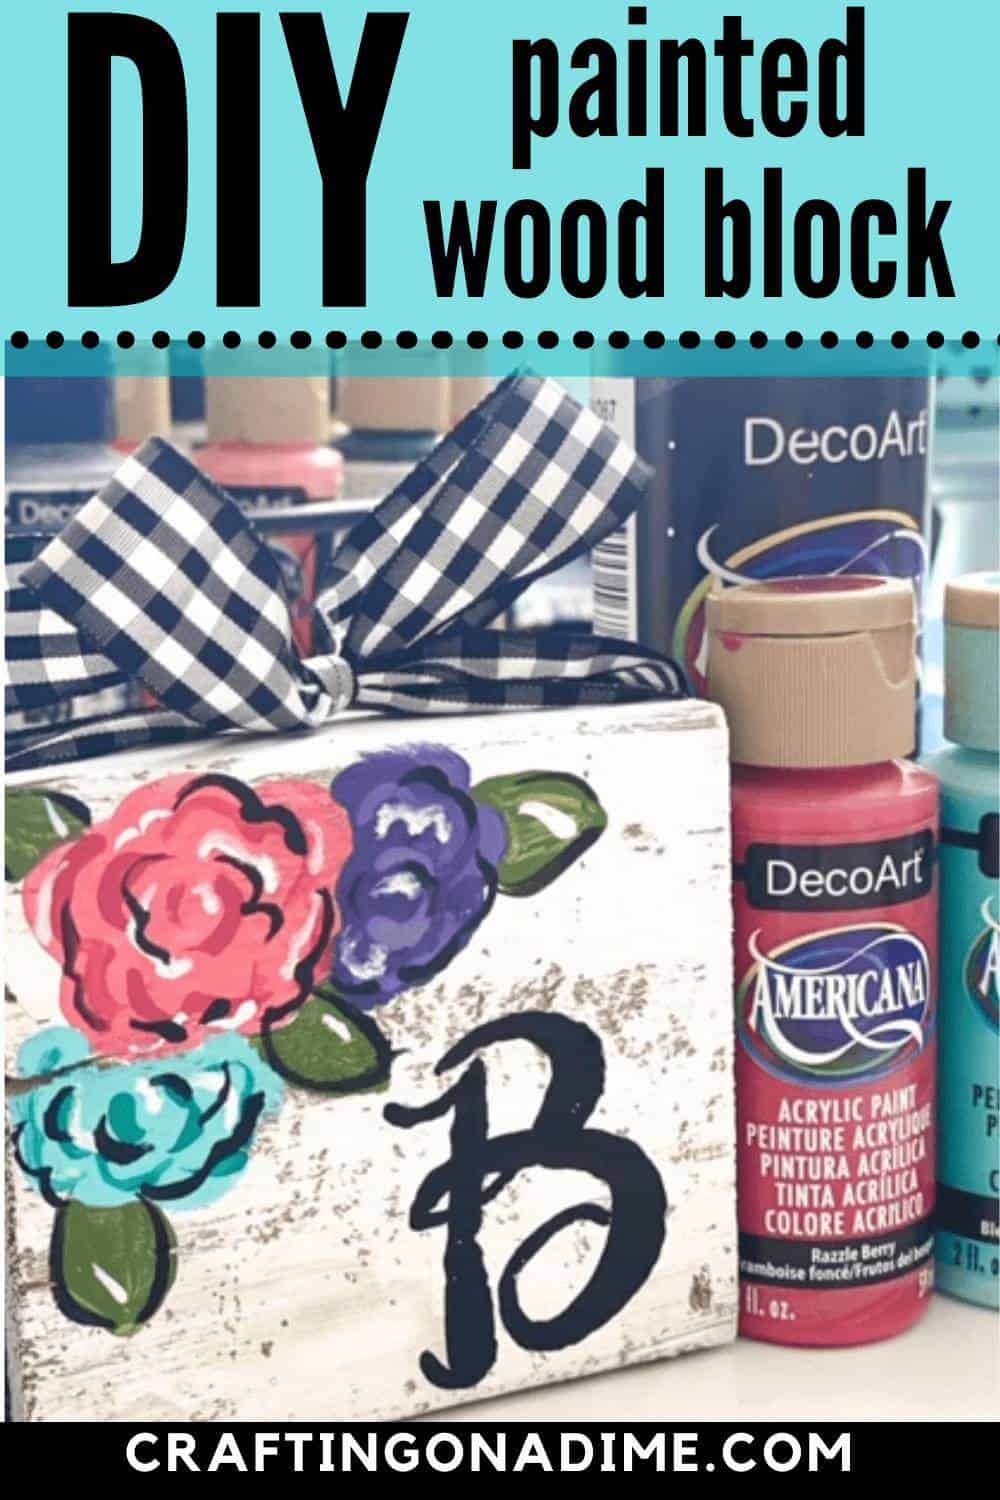 DIY-painted-wood-block